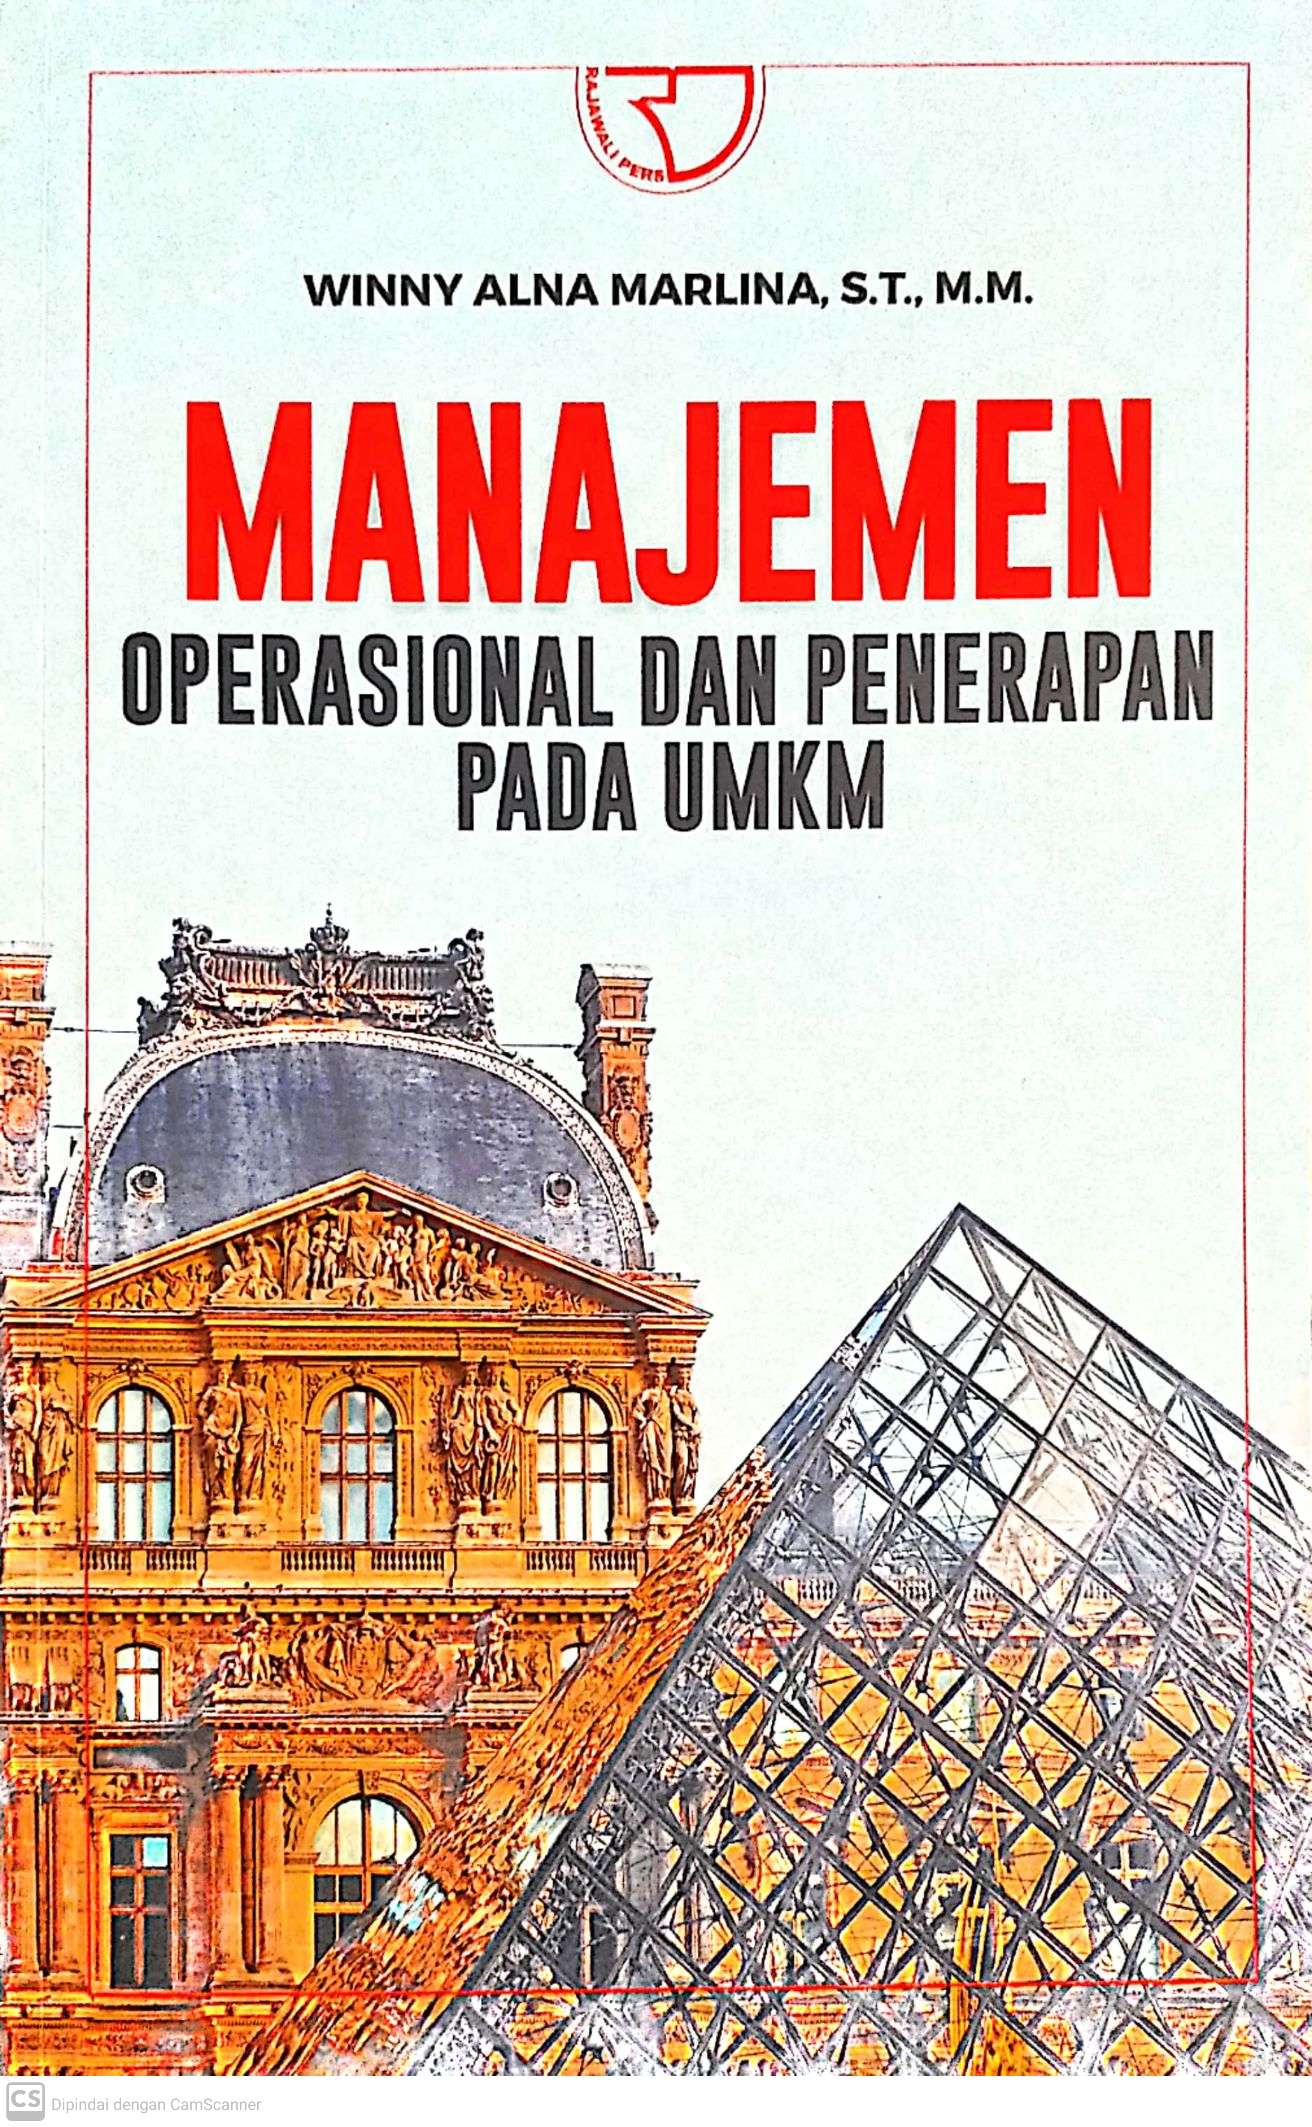 Manajemen Operasional dan Penerapan Pada UMKM